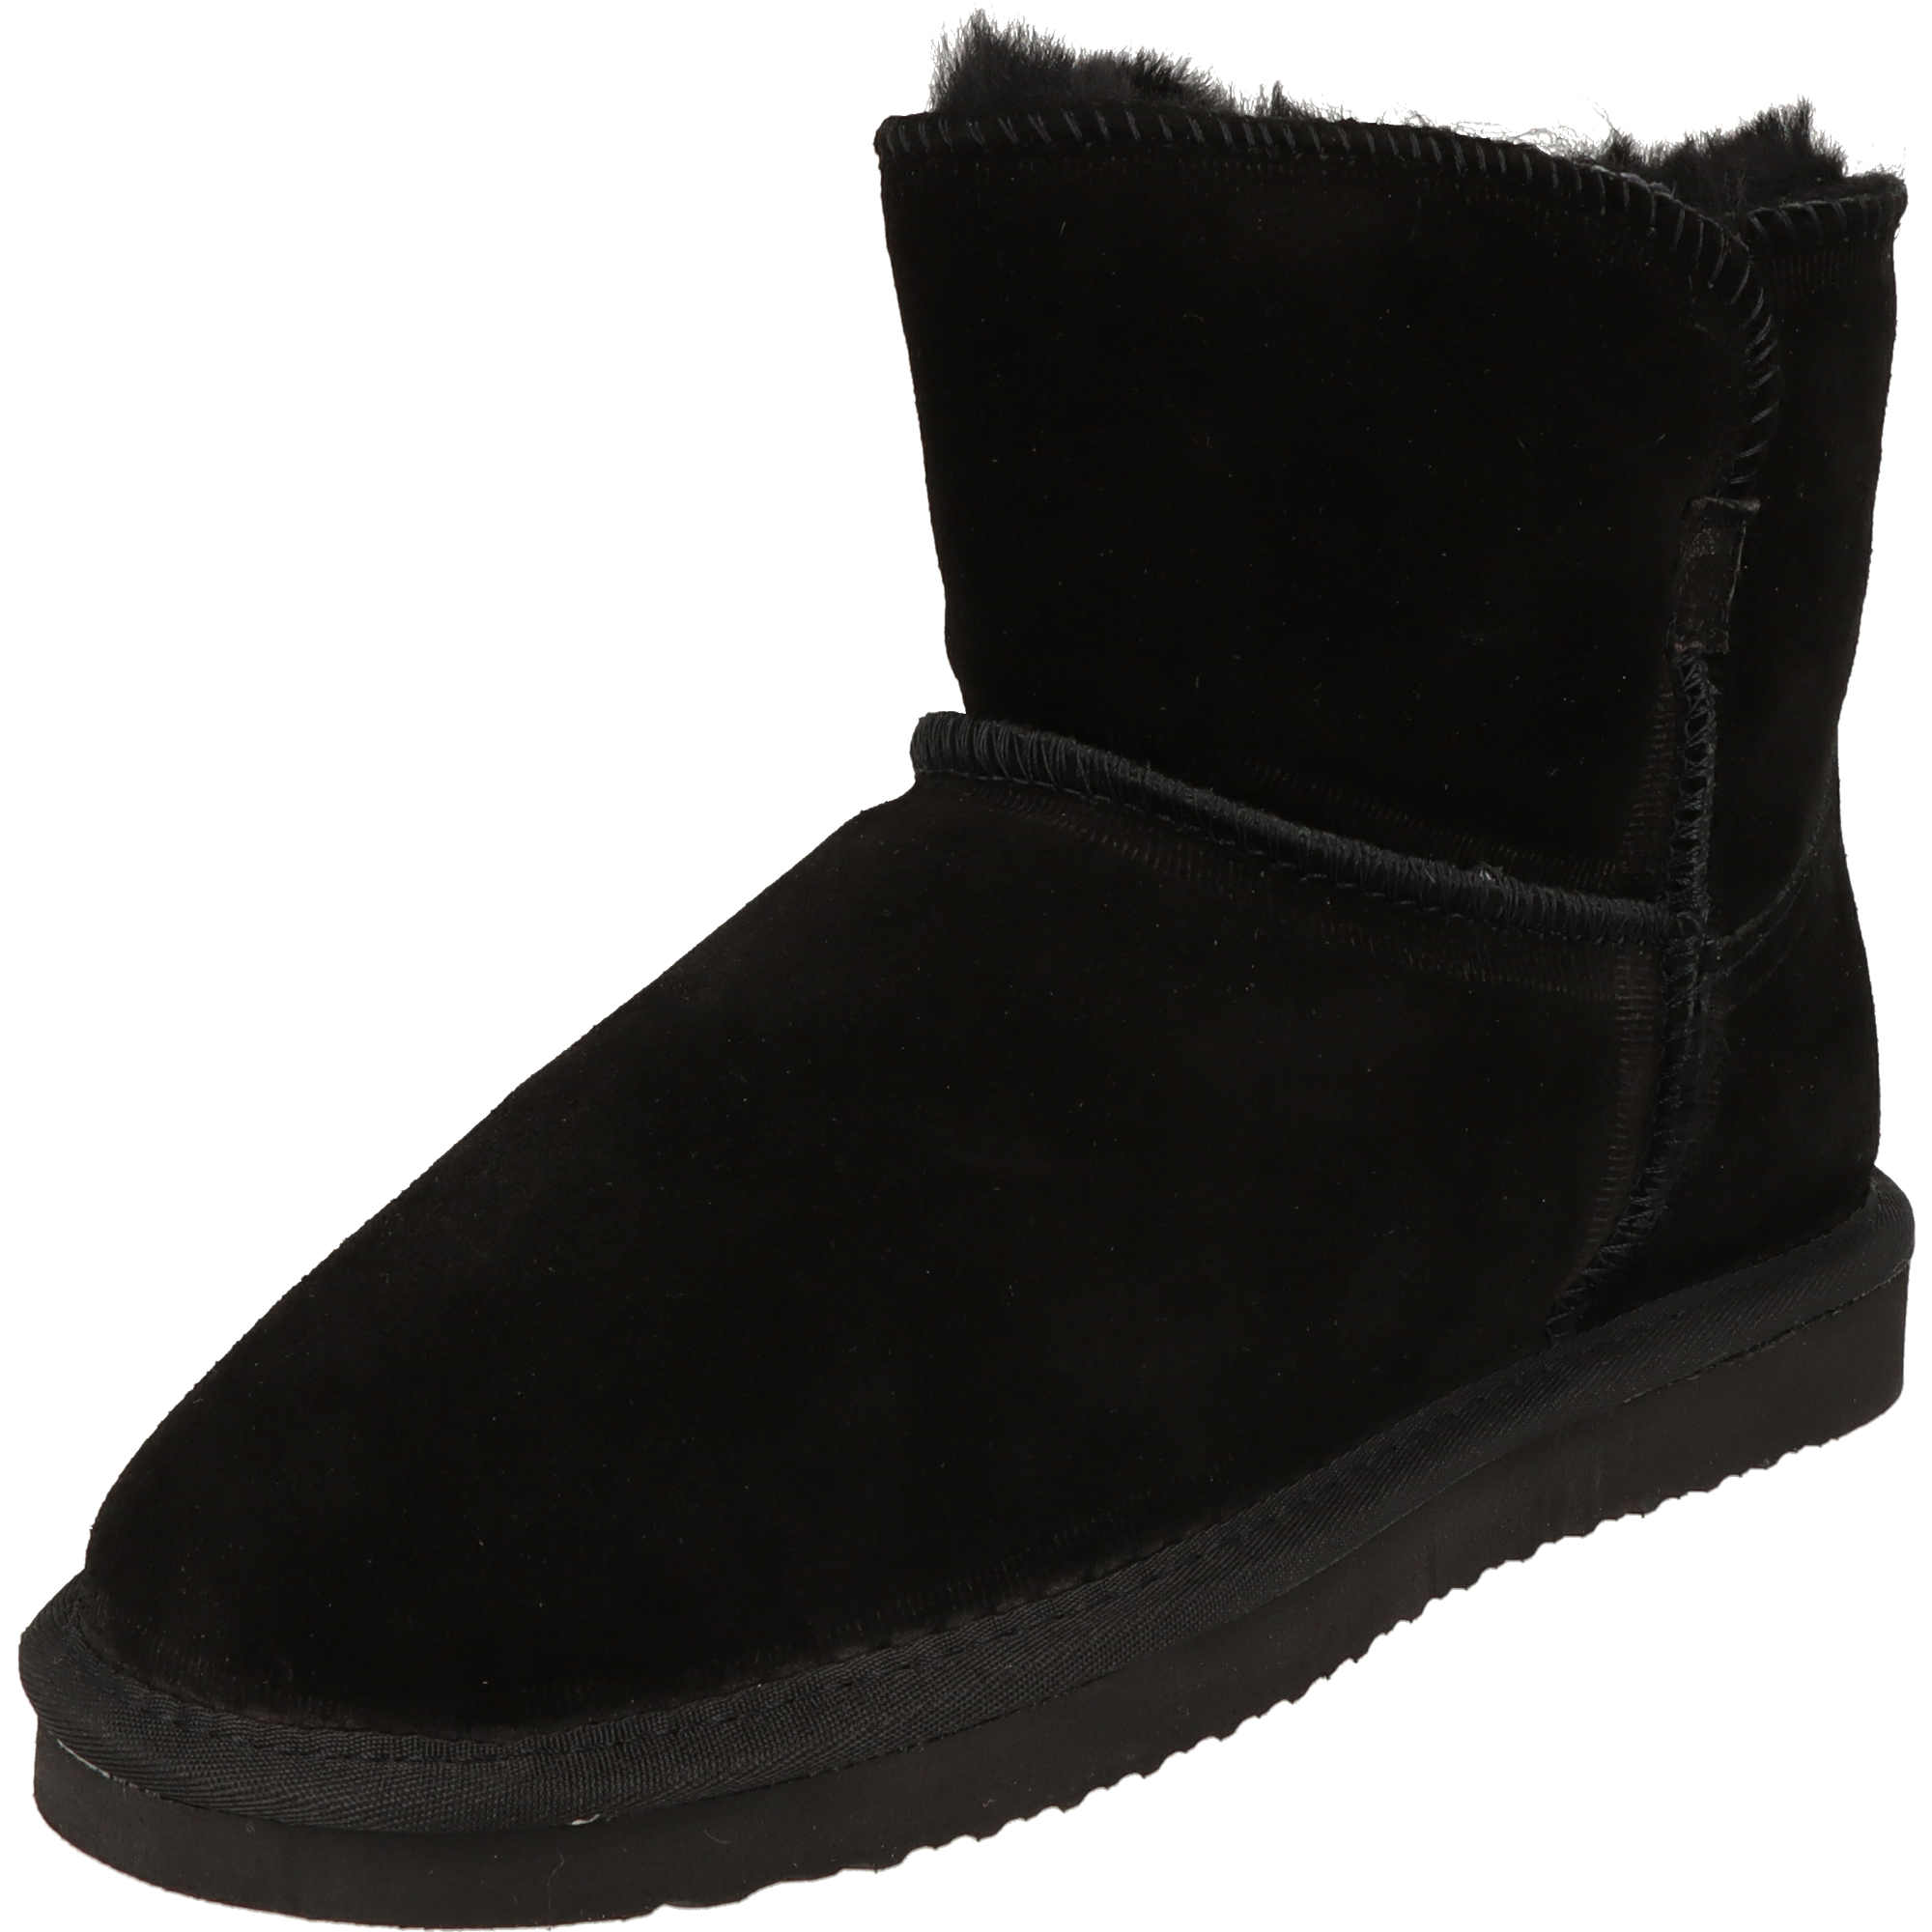 Piece Of Mind Damen Schuhe Winter Mid-Cut Leder Boots 264-695 gefüttert Black